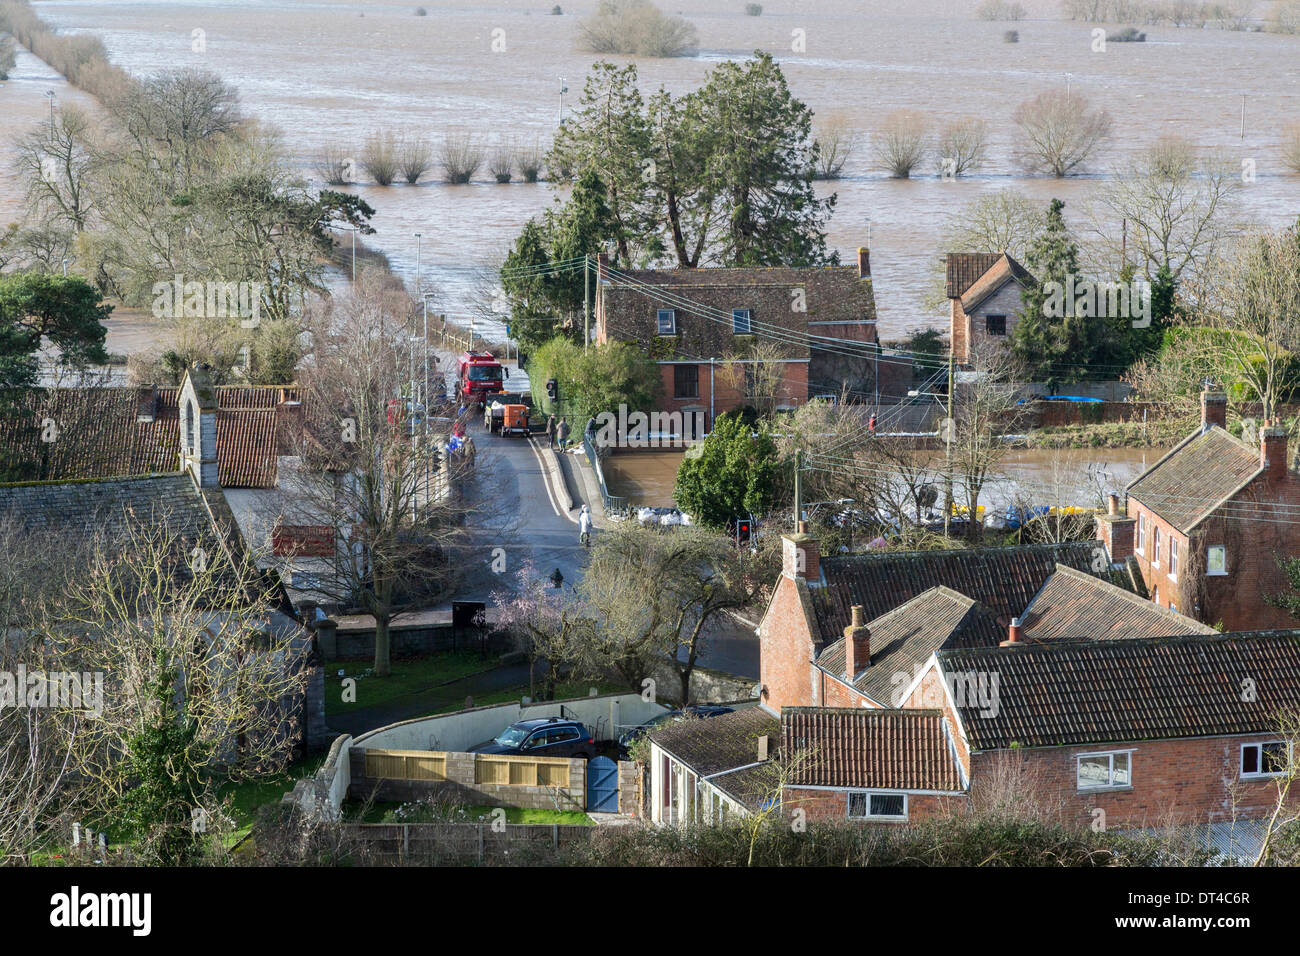 Borrowbridge, Somerset, Reino Unido. El 8 de febrero de 2014. La aldea de Burrowbridge en Somerset, el 8 de febrero de 2014 rodeado por el agua de la inundación como se ve desde la parte superior de la madriguera Mump. Debido a la gran precipitación, el Río Parrett ha sido incapaz de hacer frente al volumen de agua y ha inundado tierras cercanas y la carretera principal A361 a Taunton ha estado cerrada durante siete semanas. Una alerta de inundaciones graves, lo que significa la vida puede estar en riesgo permanece en su lugar y muchos ocupantes han dicho a evacuar. Crédito: Nick Cable/Alamy Live News Foto de stock